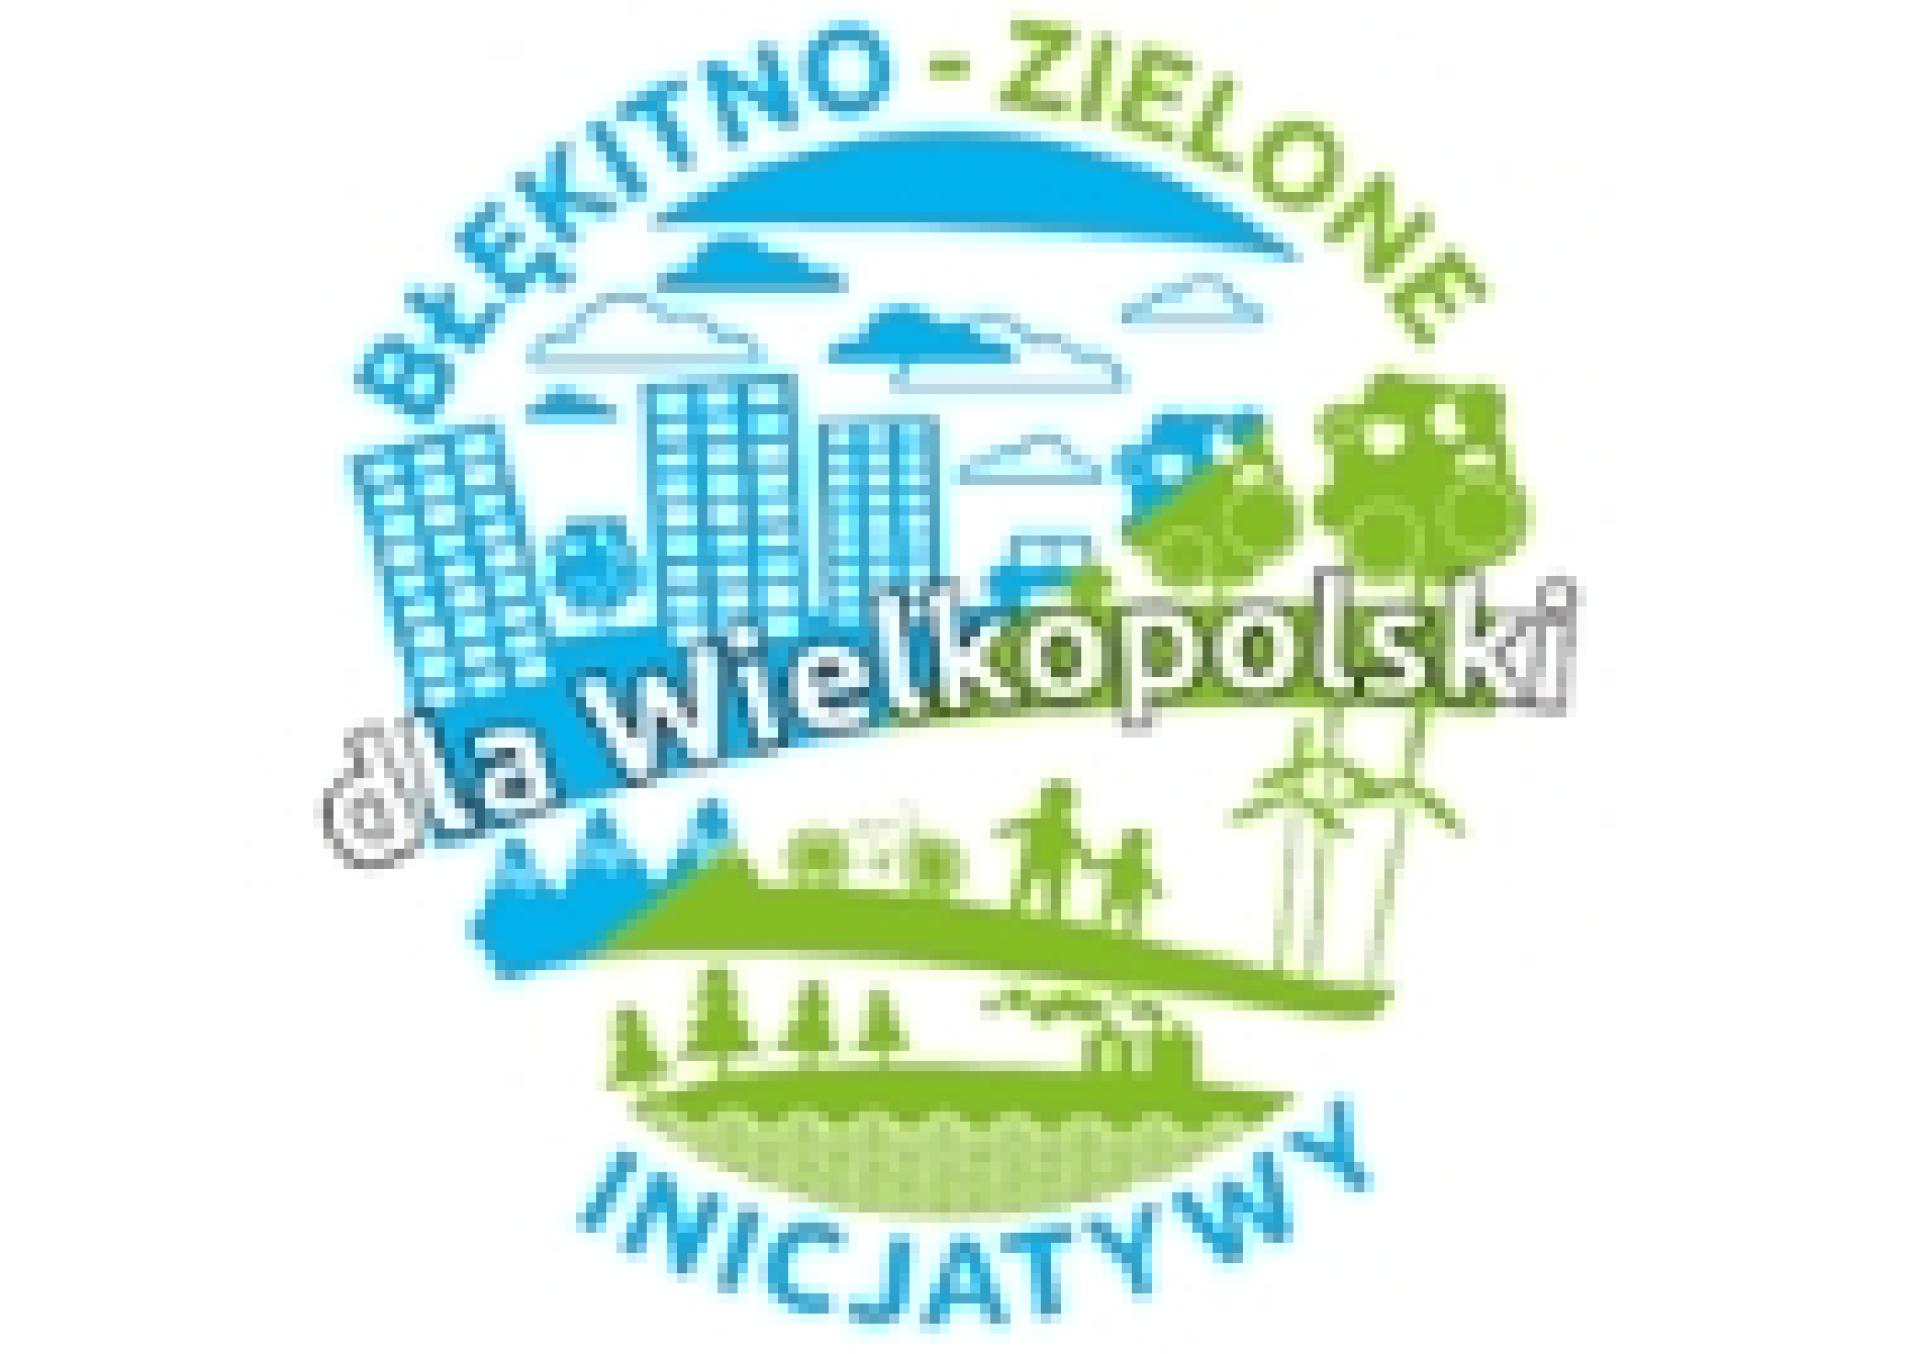 Ogłoszenie naboru wniosków na dofinansowanie zadań do realizacji w 2024 r. w ramach Programu pn. Błękitno-zielone inicjatywy dla Wielkopolski - zobacz więcej